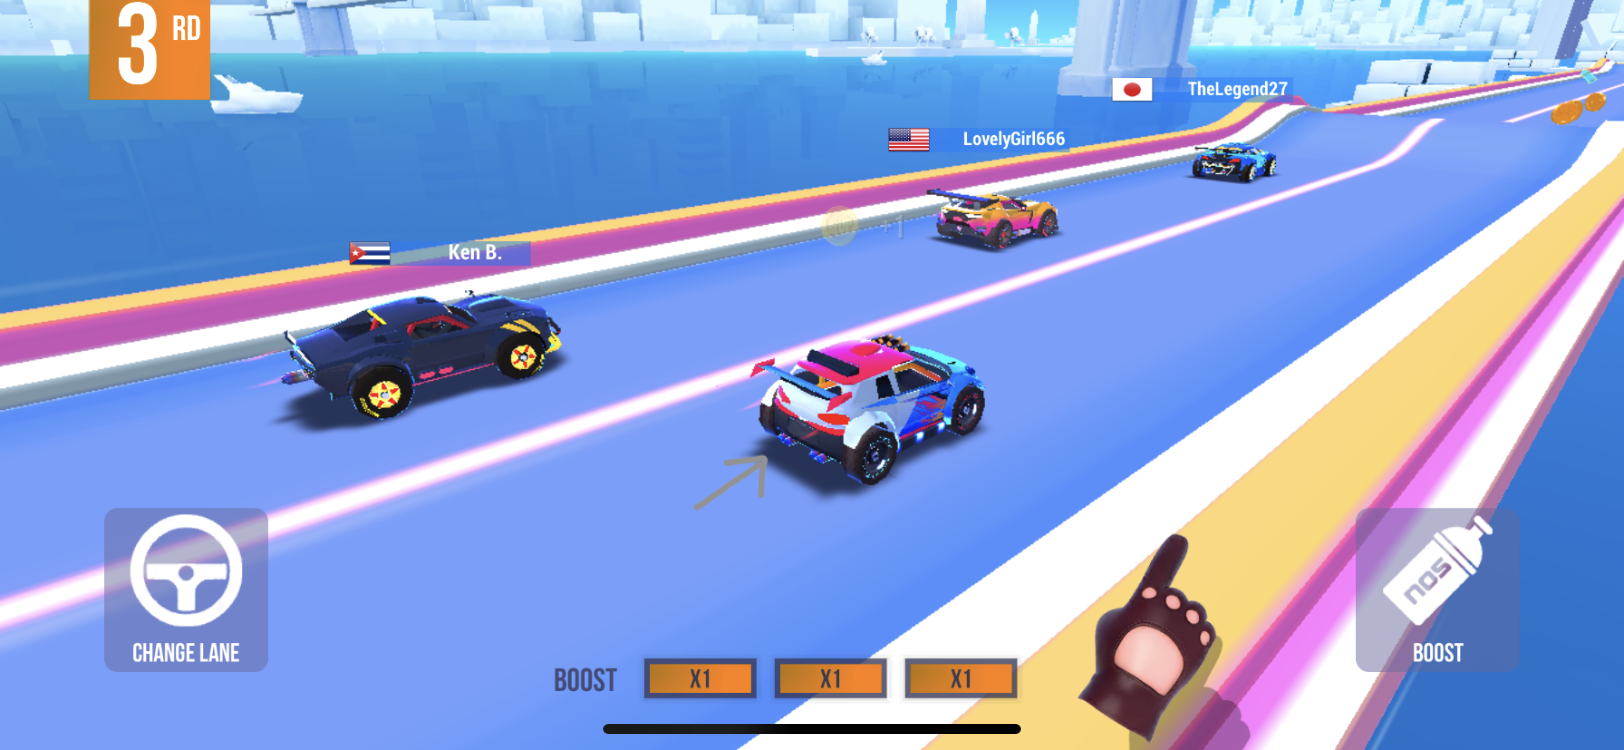 ファンキーなビジュアルでエキサイティングなレースを楽しめる対戦ゲームアプリ Sup Multiplayer Racing Dime アットダイム